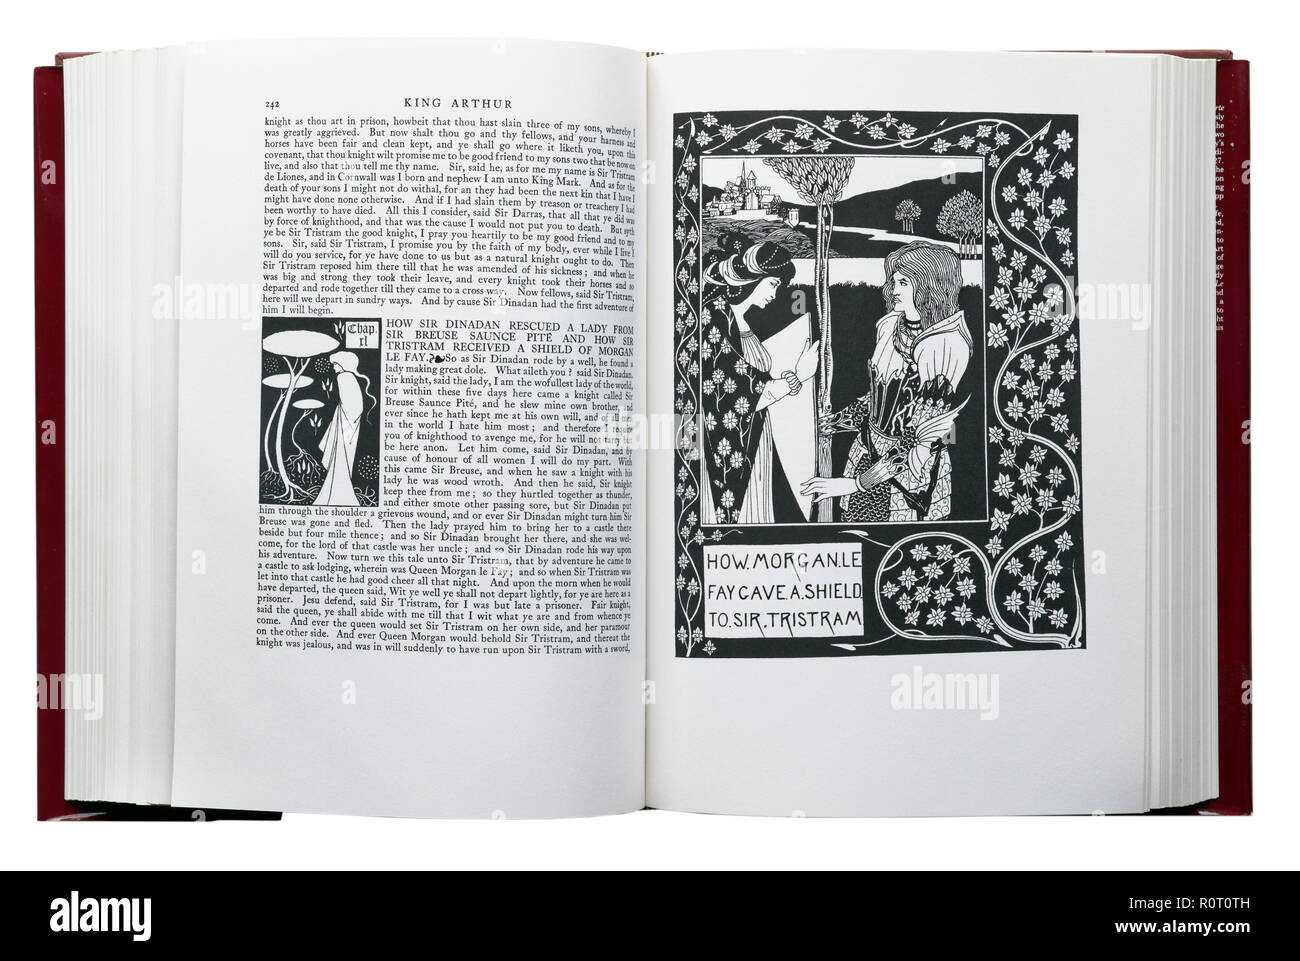 Le morte d'Arthur de Sir Thomas Malory. Illustration Comment Morgan Le Fay a donné un bouclier à Sir Tristram par Aubrey Beardsley Banque D'Images